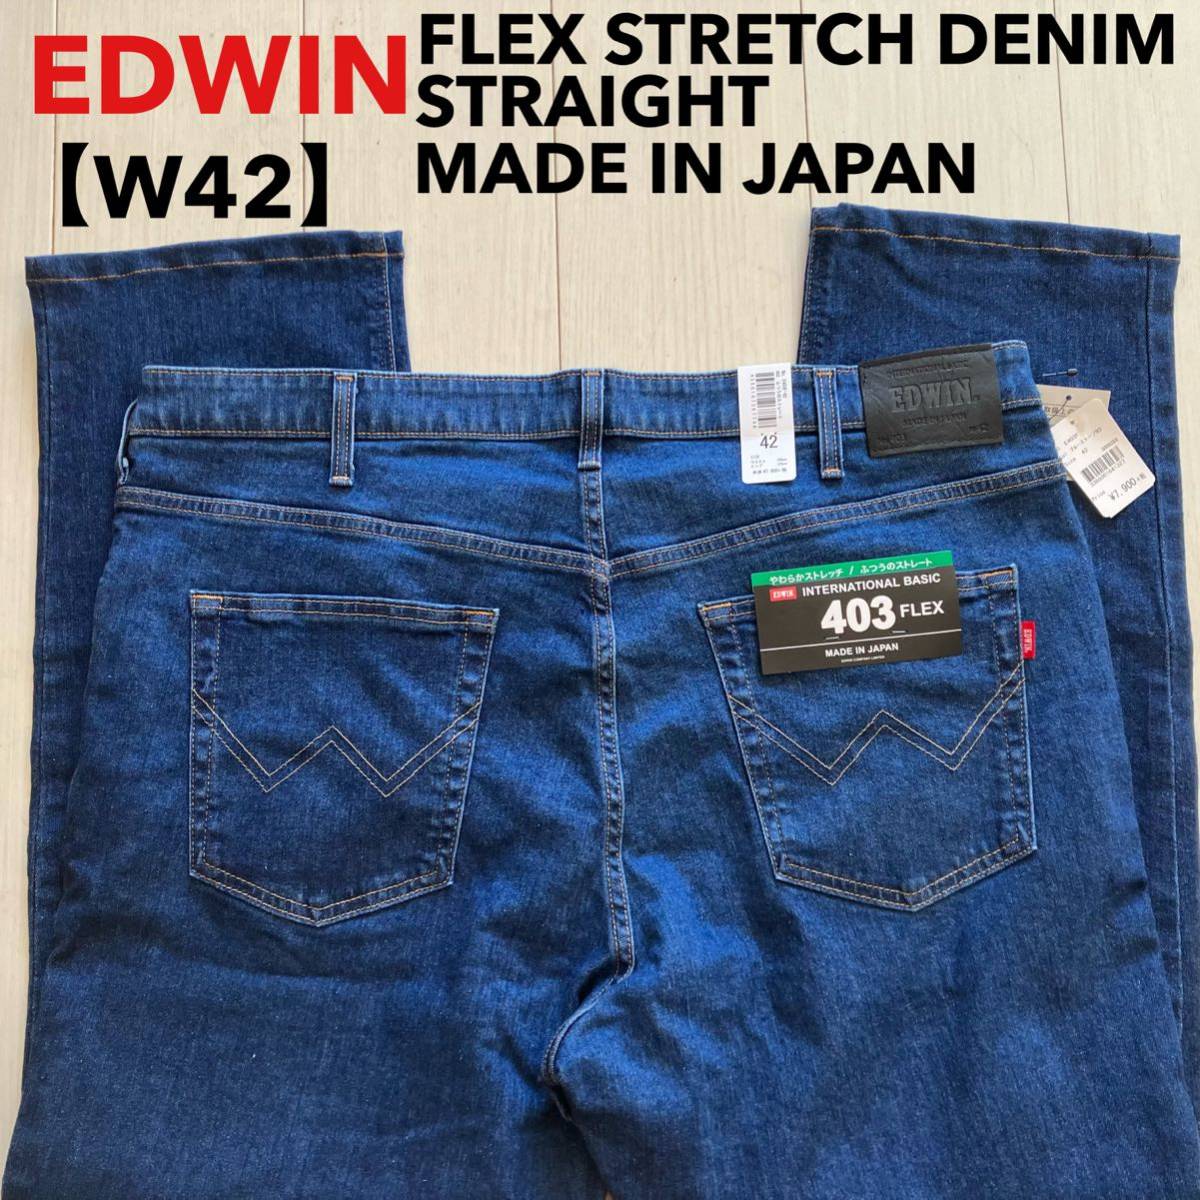  быстрое решение не использовался с биркой W42 EDWIN Edwin 403 Flex .... распорка мягкость стрейч FLEX сделано в Японии No.E403F большой размер 